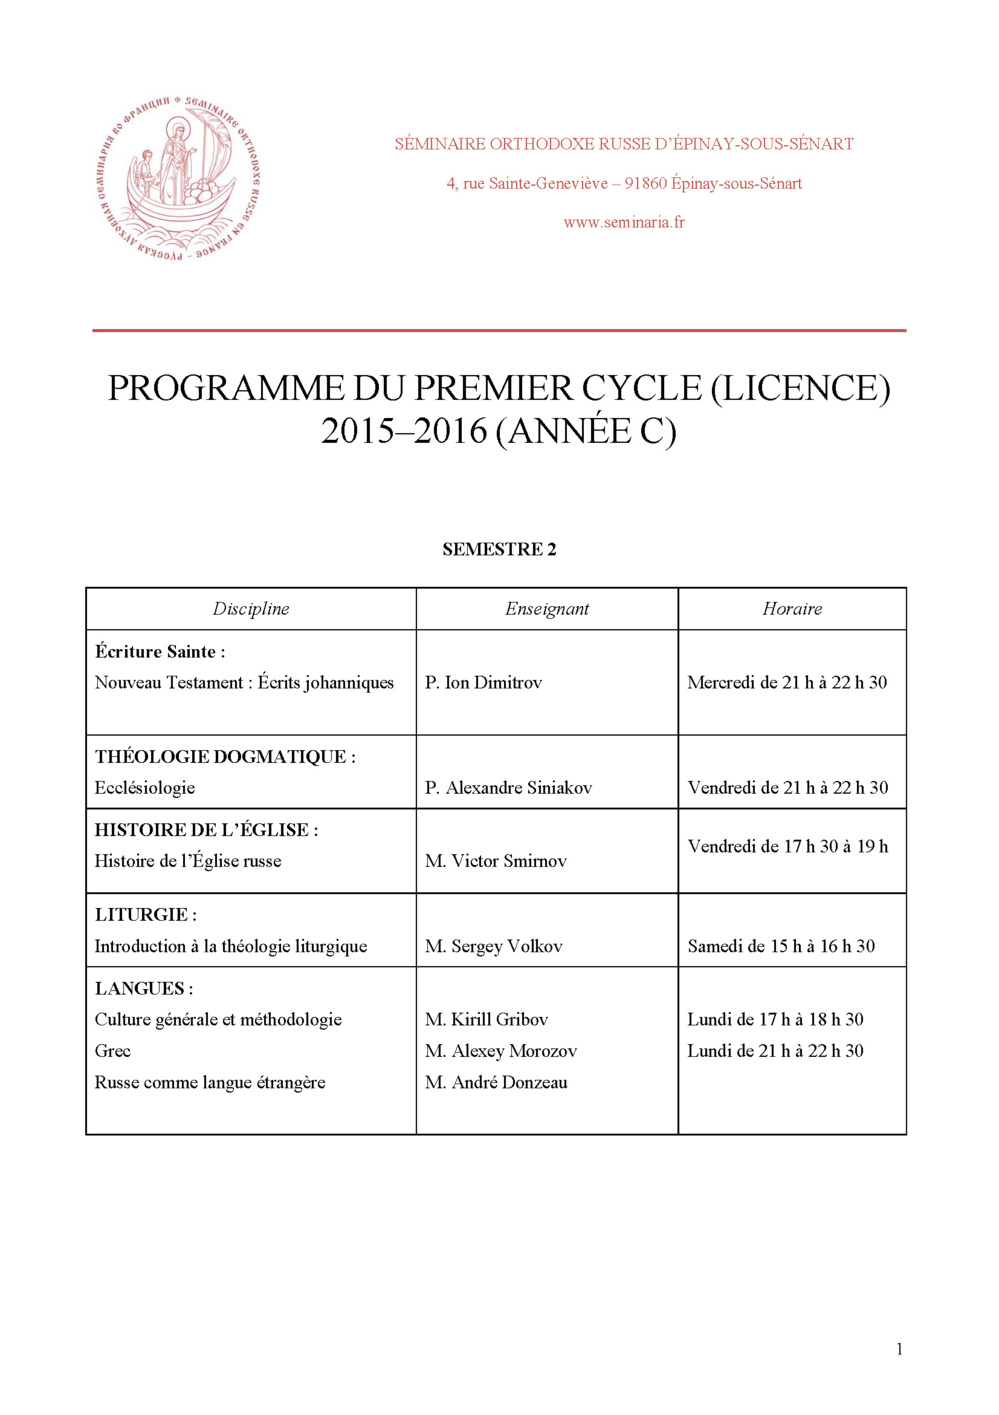 Programme du premier cycle (licence) 2015–2016 (Année C, semestre 2)